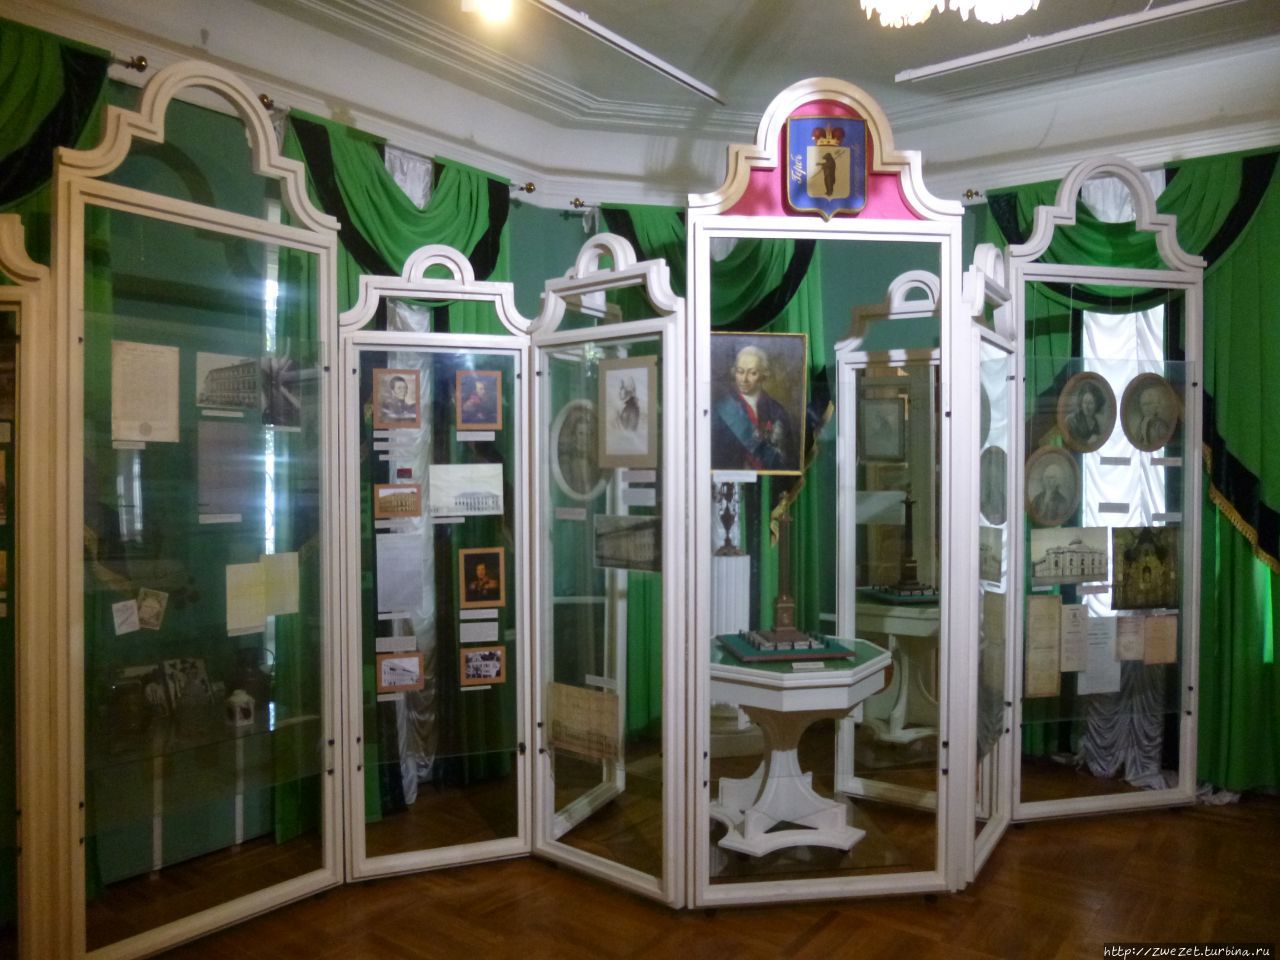 Музей истории Ярославля Ярославль, Россия